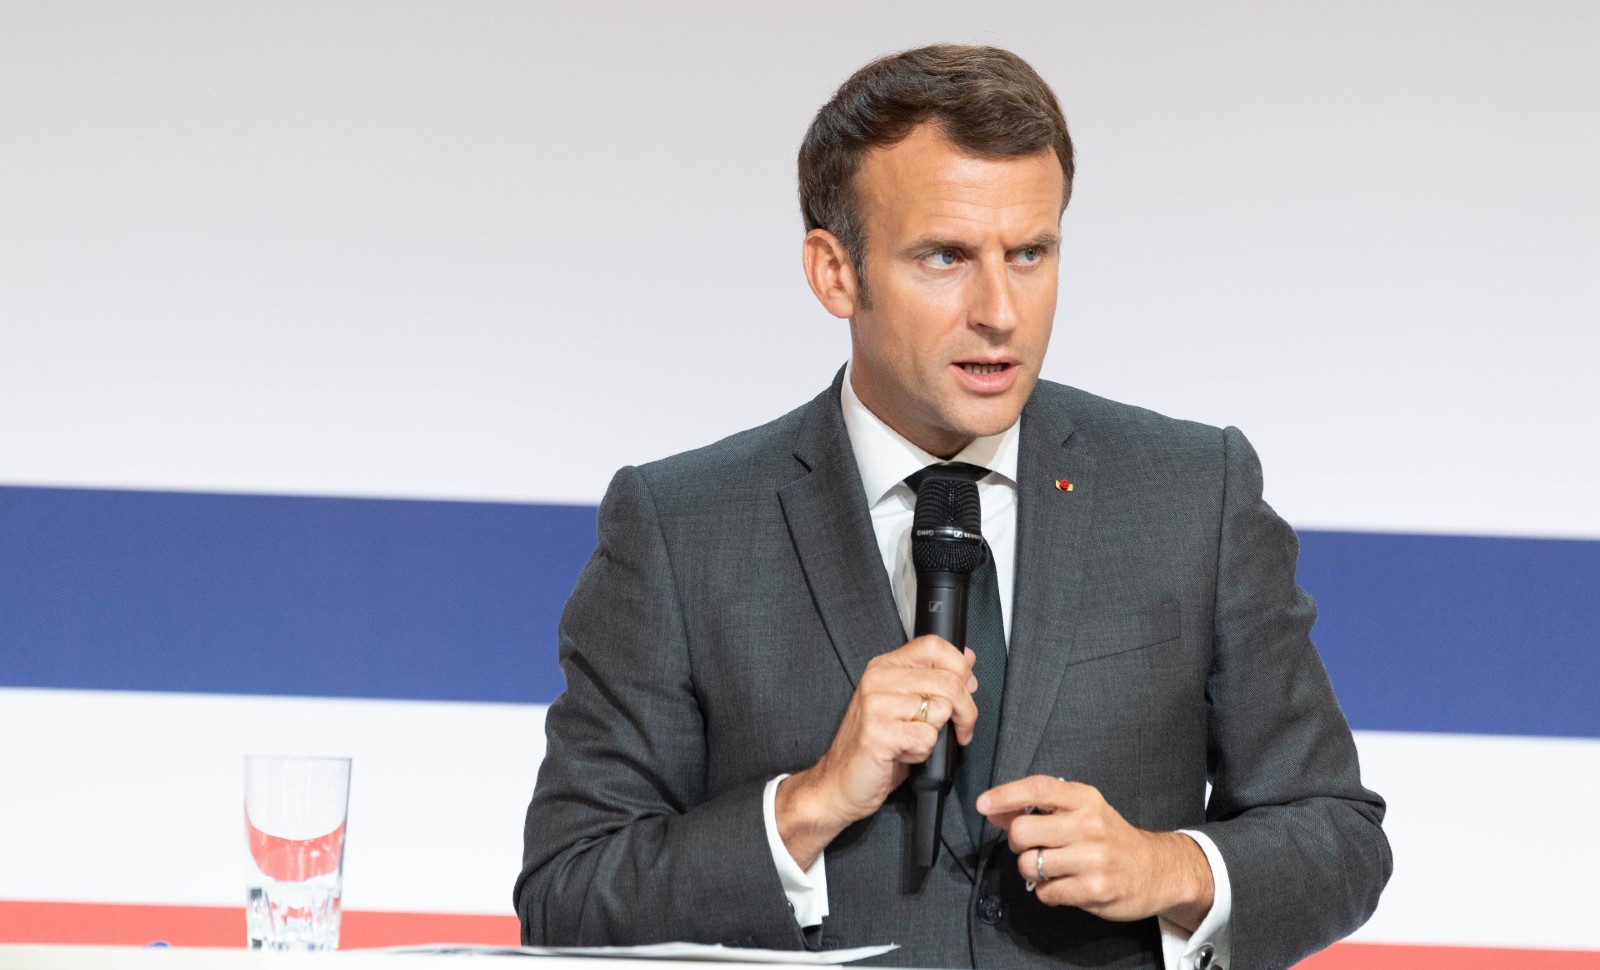 Annonce d’une deuxième candidature: Macron prend-il les citoyens pour des imbéciles?